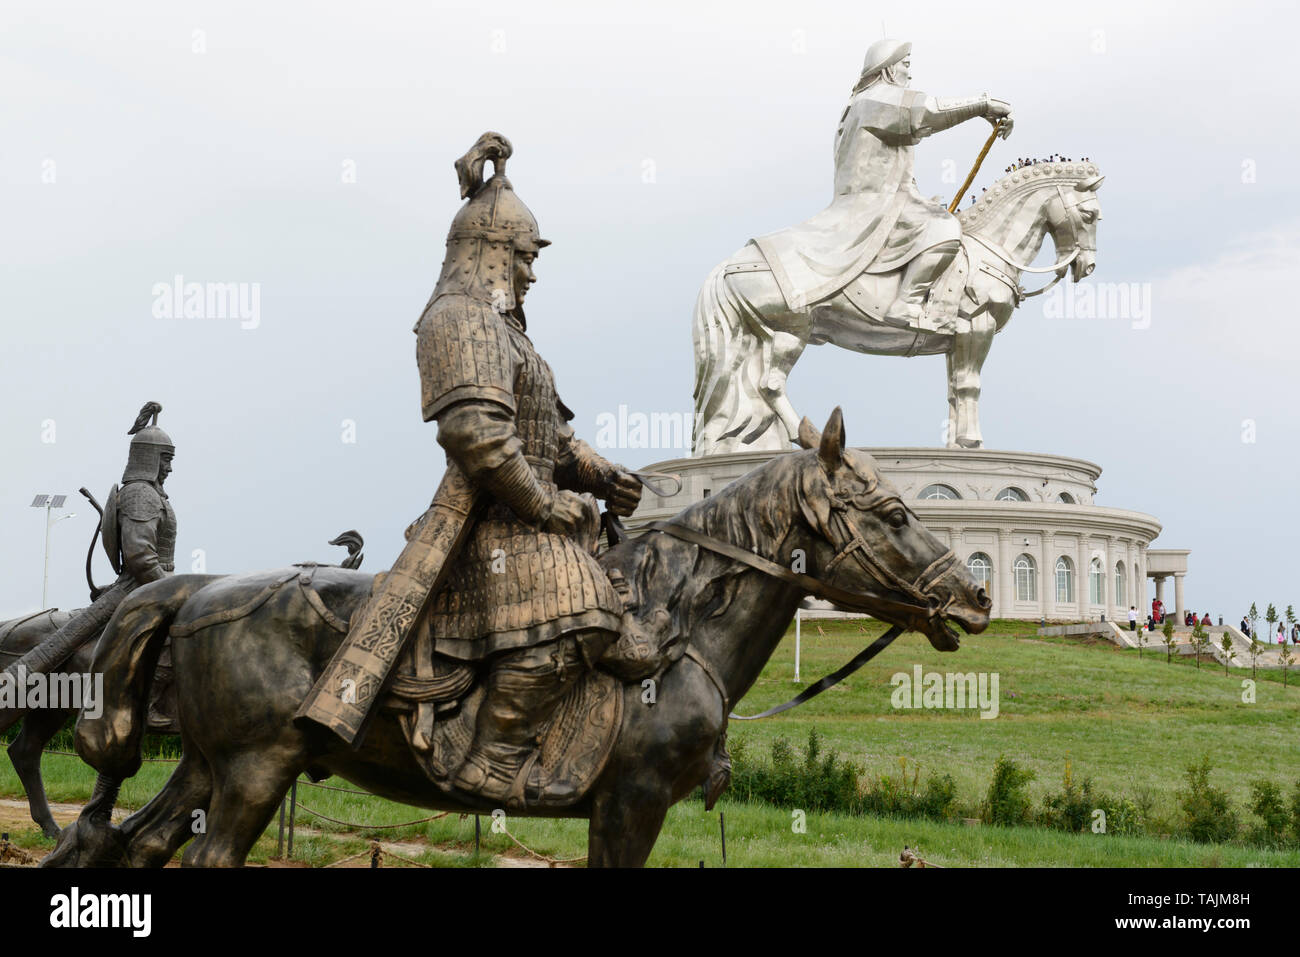 La estatua ecuestre de Genghis Khan, parte del complejo de la Estatua de Genghis Khan, 54 km al este de Ulaanbaatar, Mongolia. Foto de stock